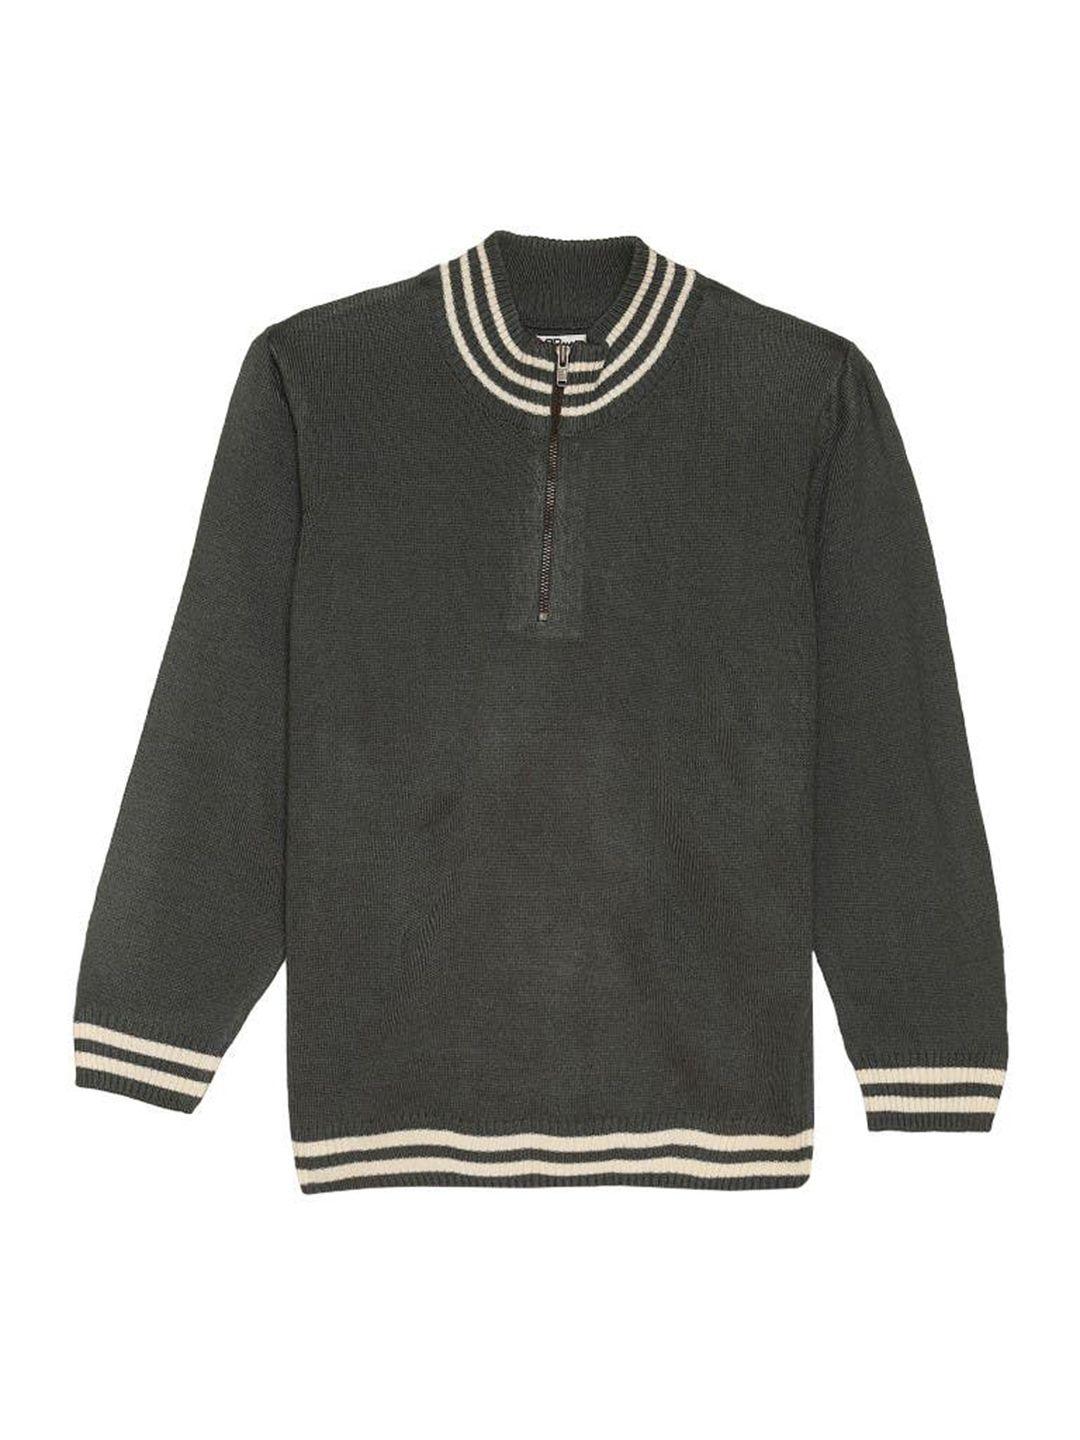 2bme-boys-mock-collar-acrylic-sweater